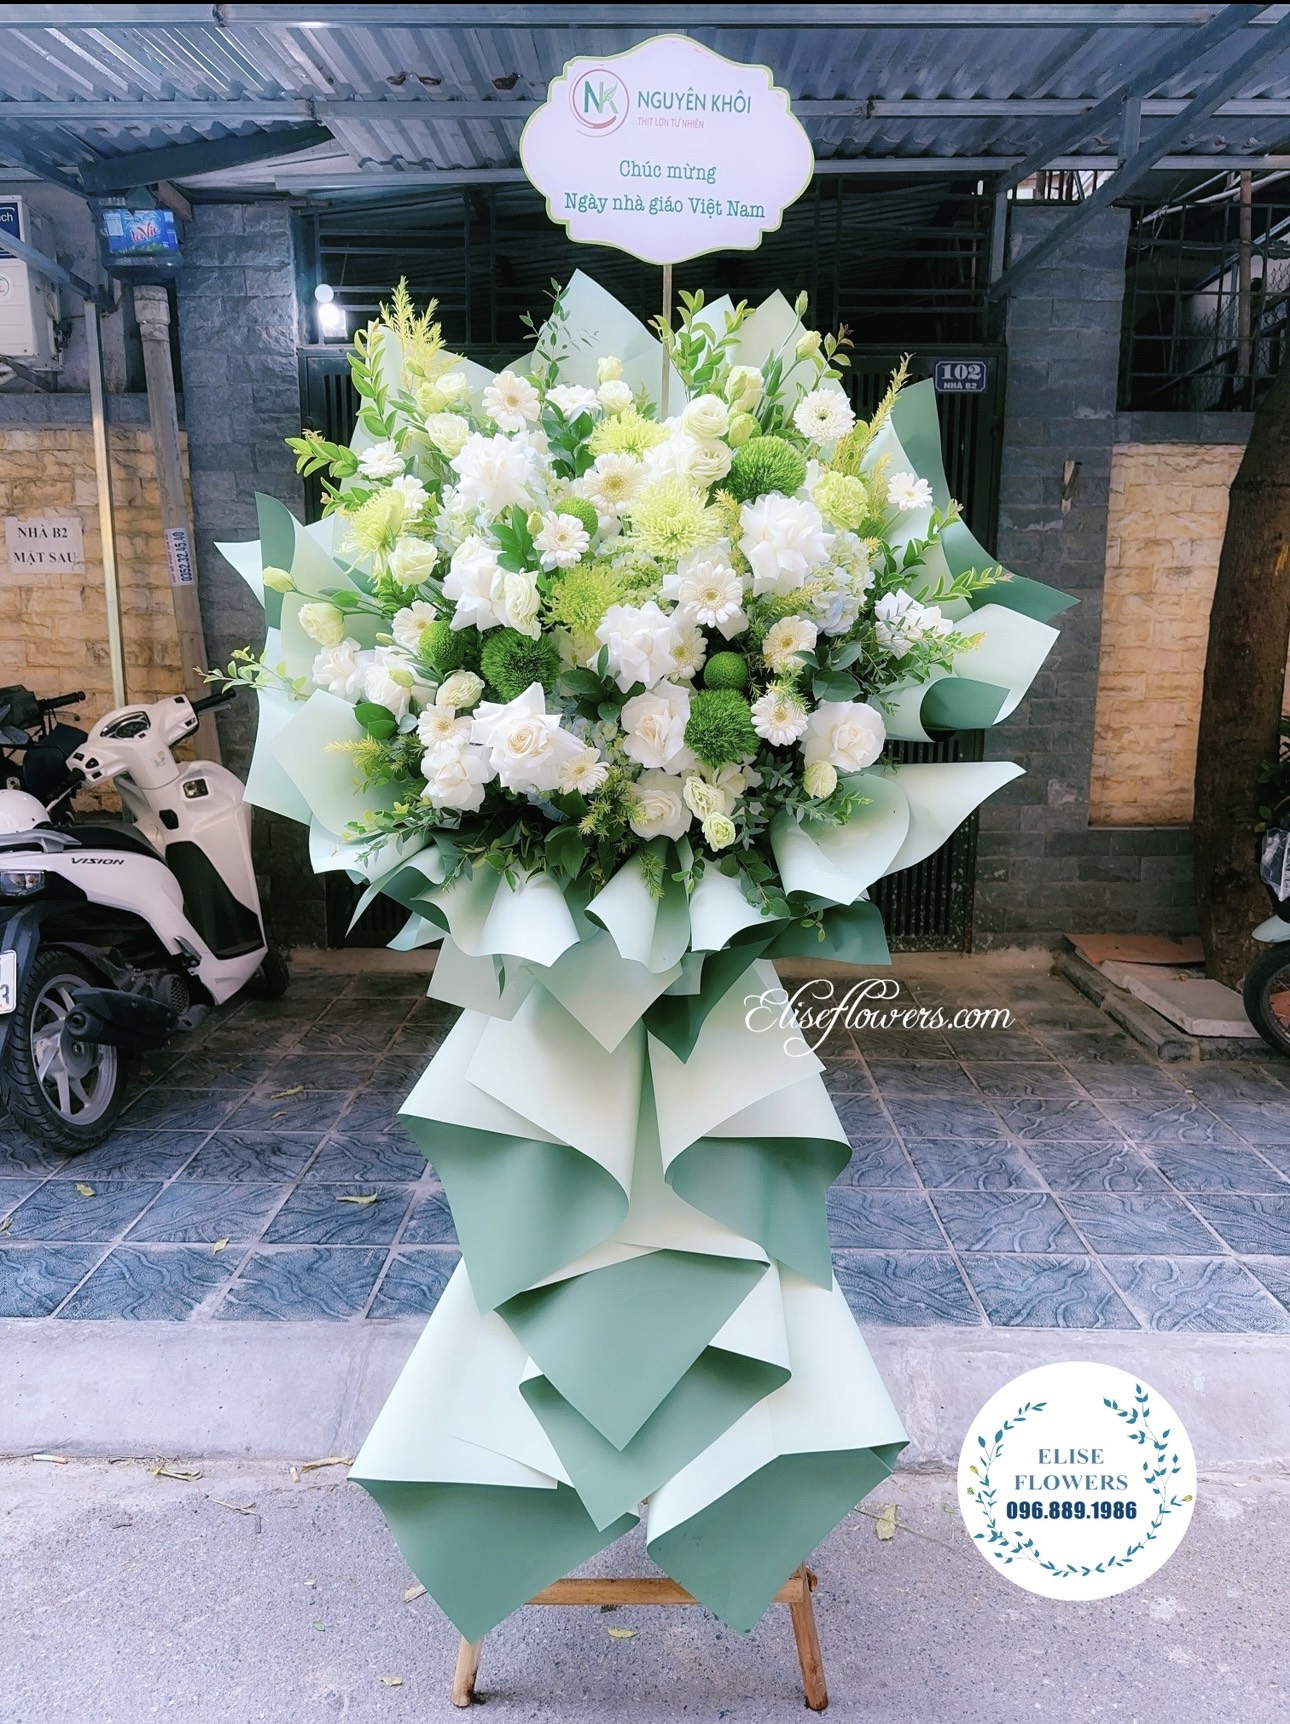 Cây hoa chúc mừng kỷ niệm thành lập công ty đẹp - Hoa sinh nhât công ty màu xanh lá đẹp ở quận Cầu Giấy, Hà Nội